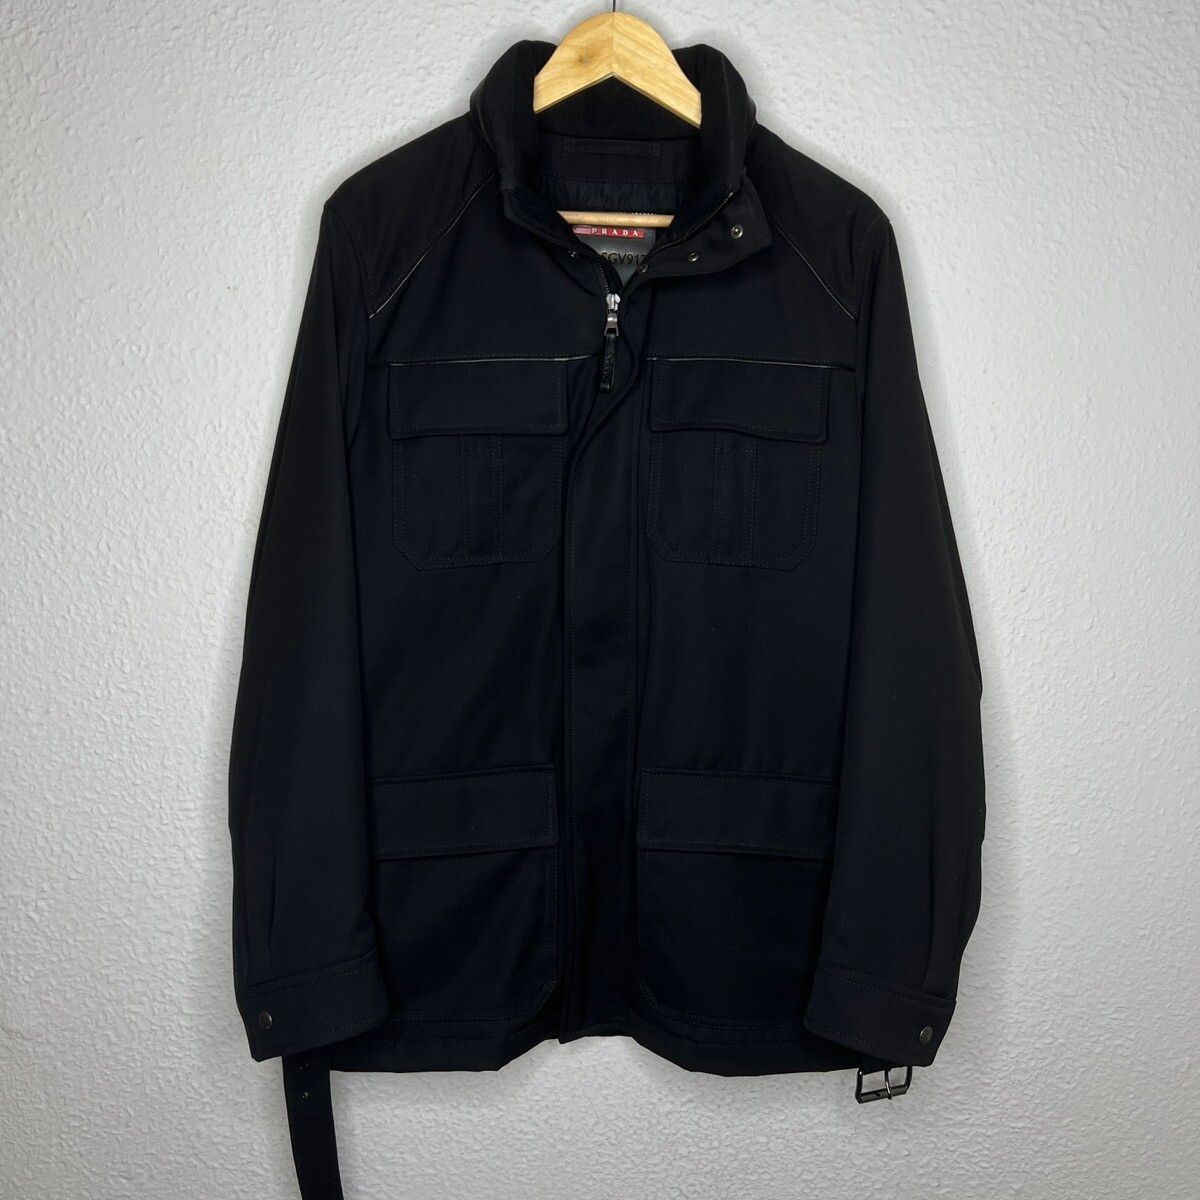 Prada Prada Milano Military Jacket Belted Coat Black Wool Designer Size US M / EU 48-50 / 2 - 7 Thumbnail